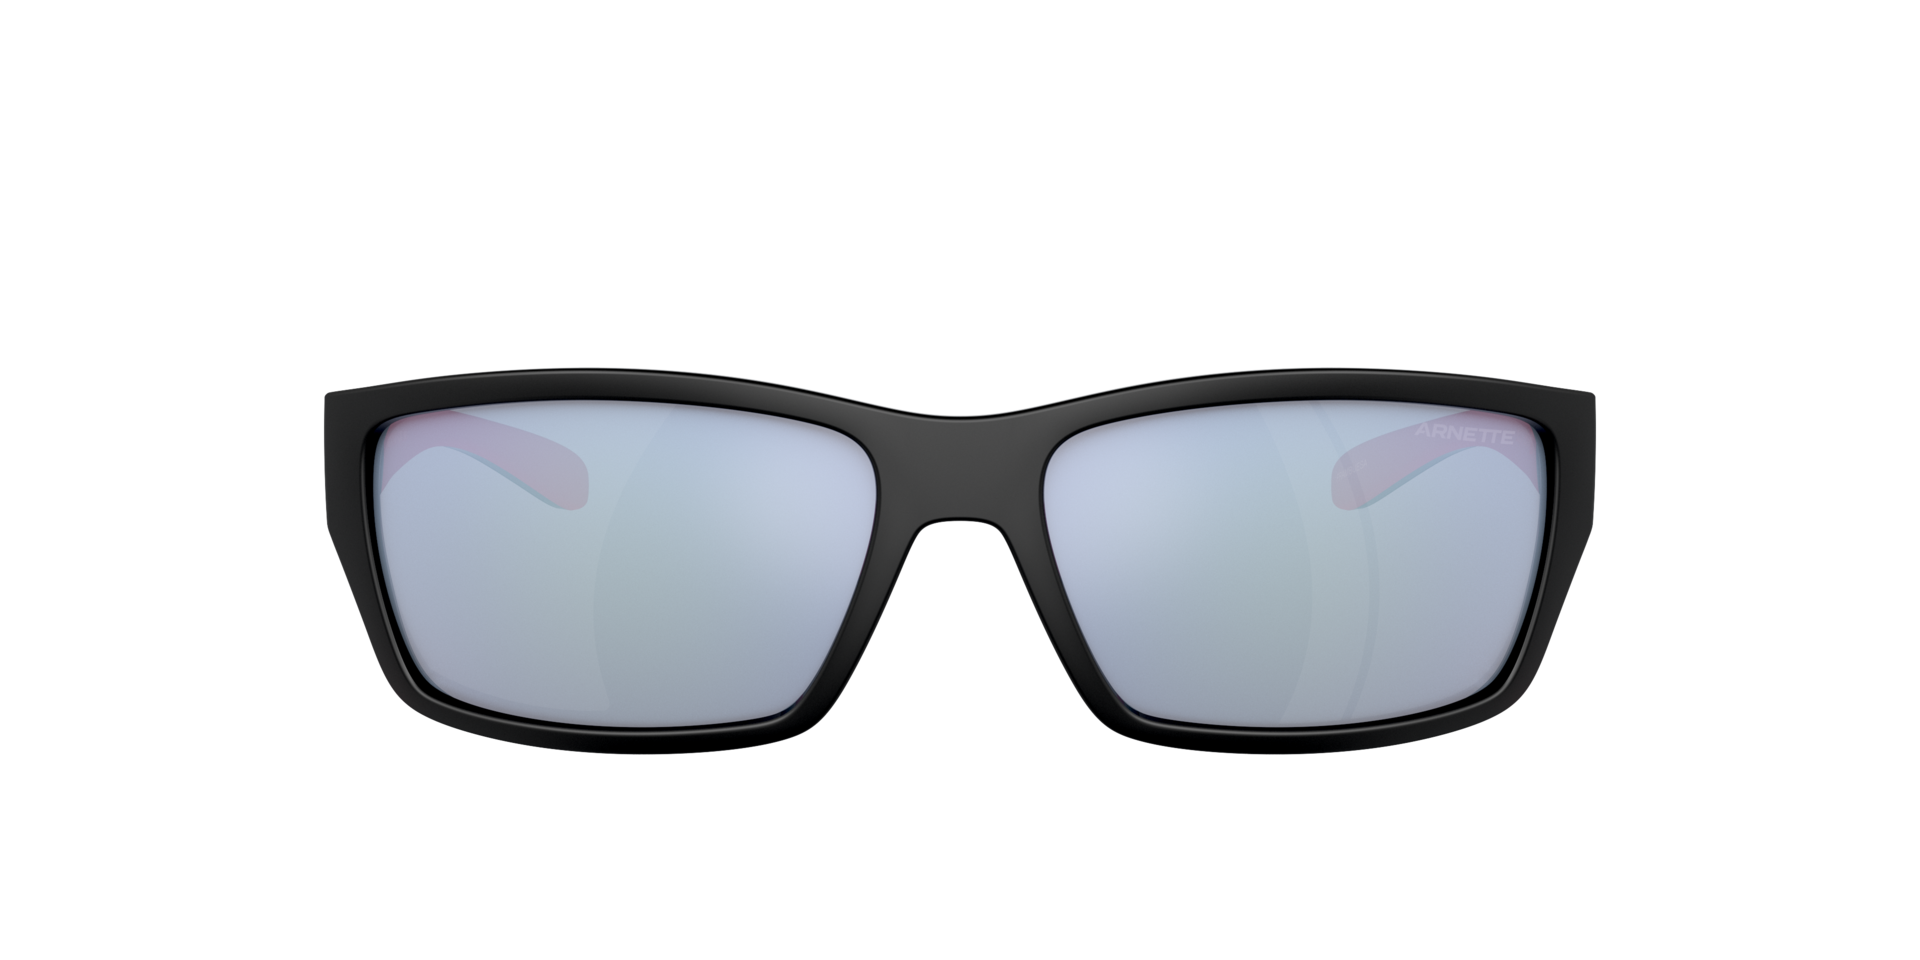 Das Bild zeigt die Sonnenbrille AN4336 27531U von der Marke Arnette in schwarz/rosa.